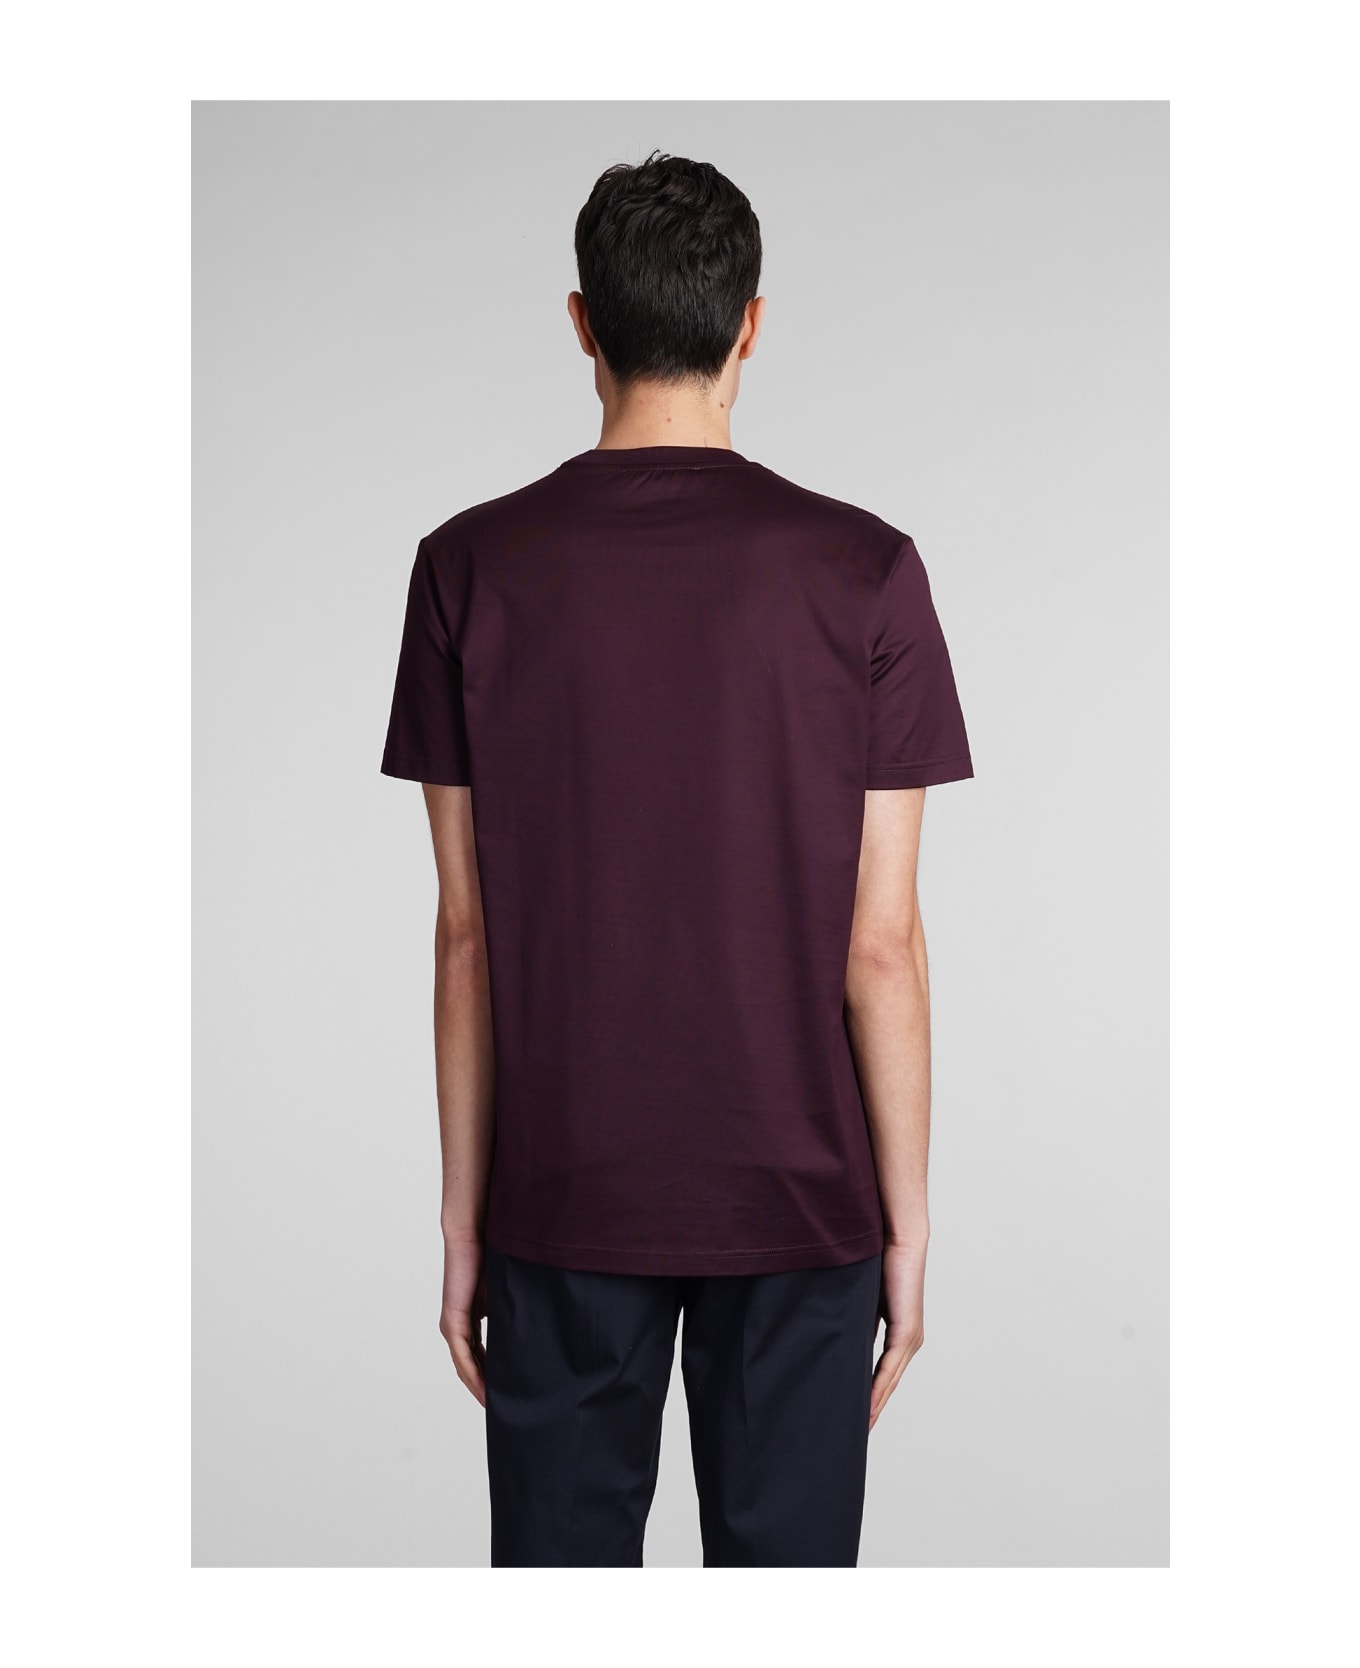 Low Brand B134 Basic T-shirt In Bordeaux Cotton - bordeaux シャツ